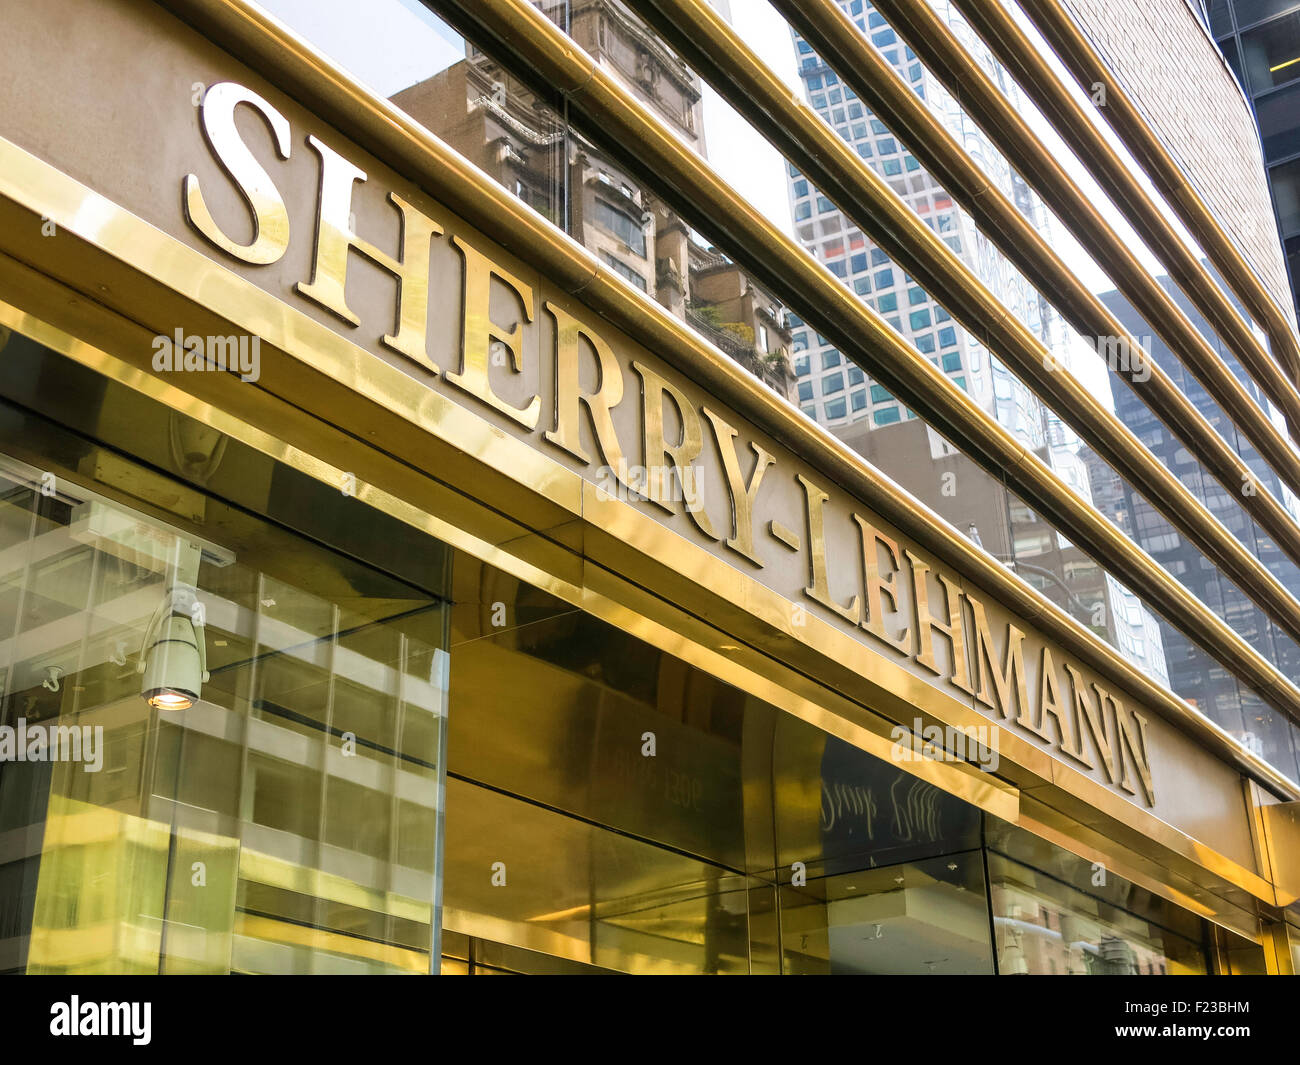 Sherry-Lehmann-Wein und Spirituosen Store Interieur, NYC, USA Stockfoto